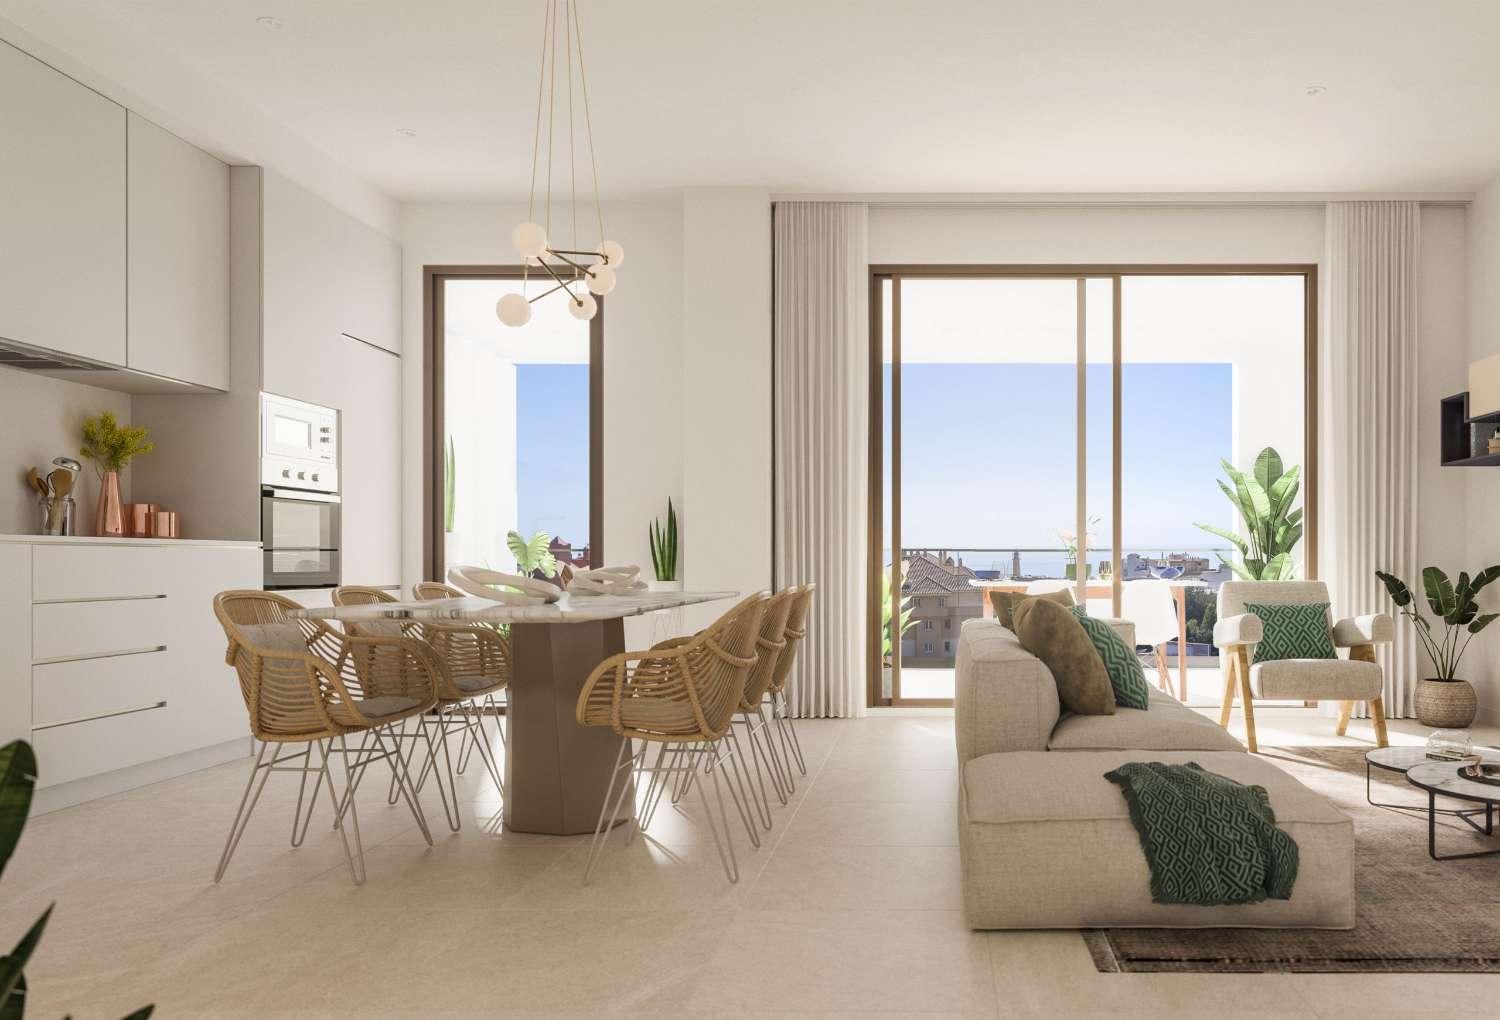 2 eller 3 soveværelser, 2 badeværelser og en terrasse med udsigt over havet – fra € 218.000